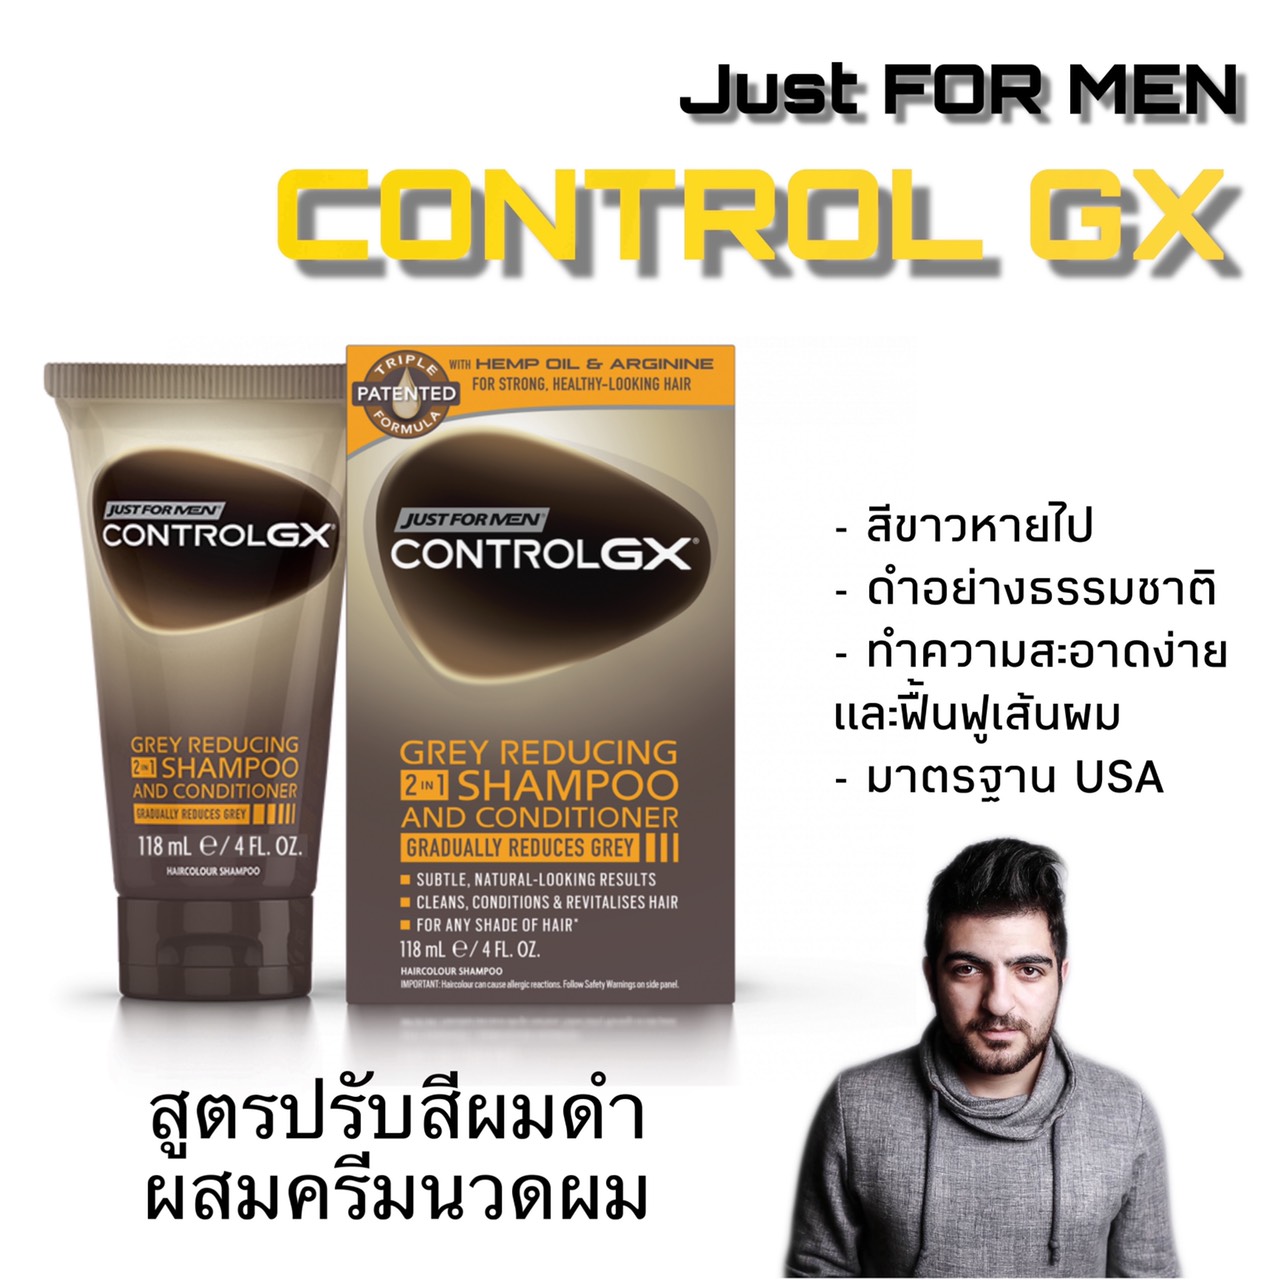 แชมพูปิดผมขาว แชมพูย้อมผมดำ สูตรผสมครีมนวดผม Just For Men Control GX Gray Reducing 2 in 1 shampoo and conditioner 118ml